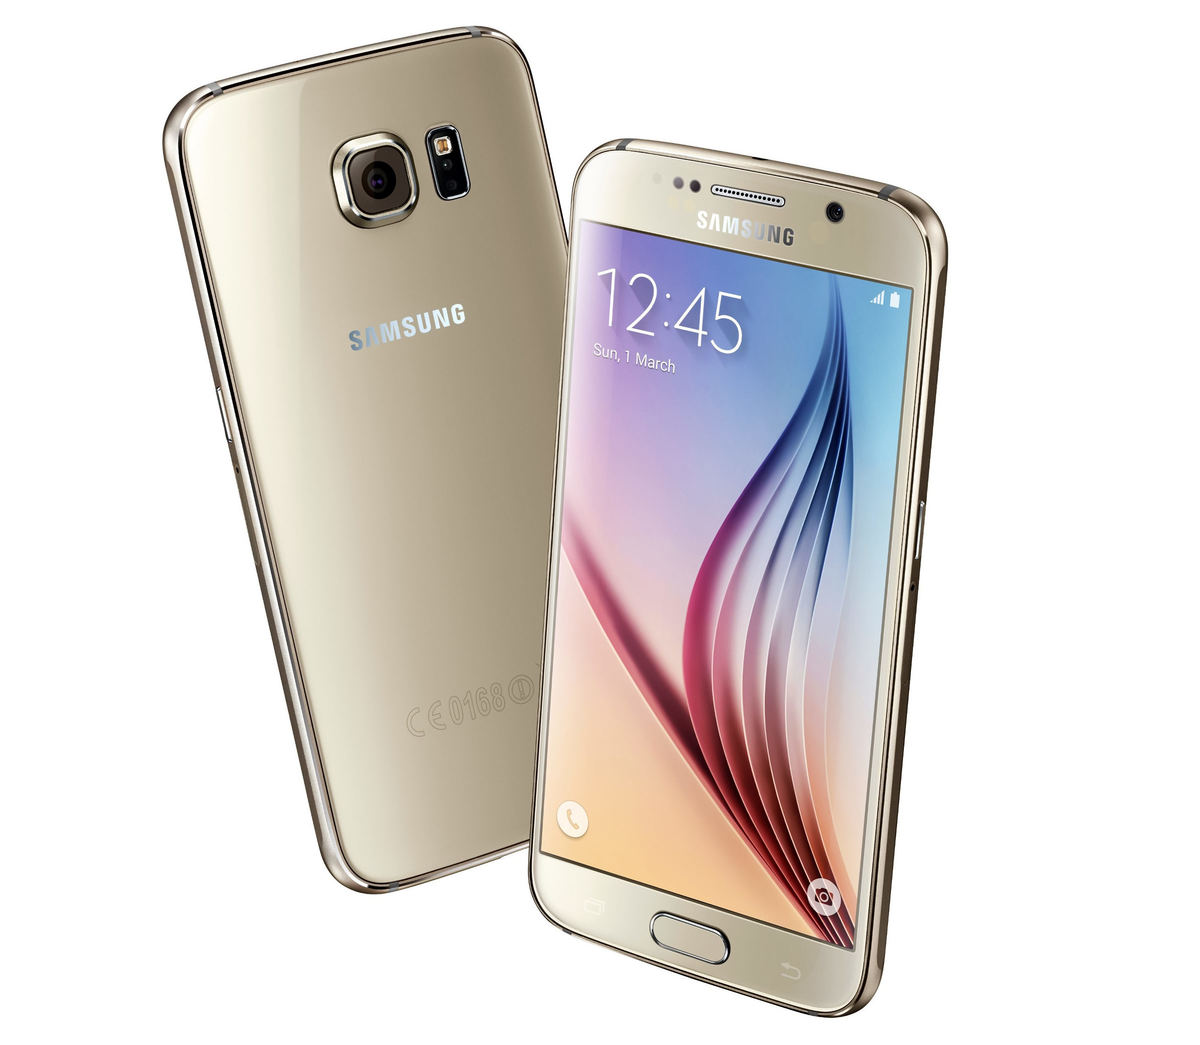 Samsung Galaxy S6 : Caratteristiche e Opinioni | JuzaPhoto